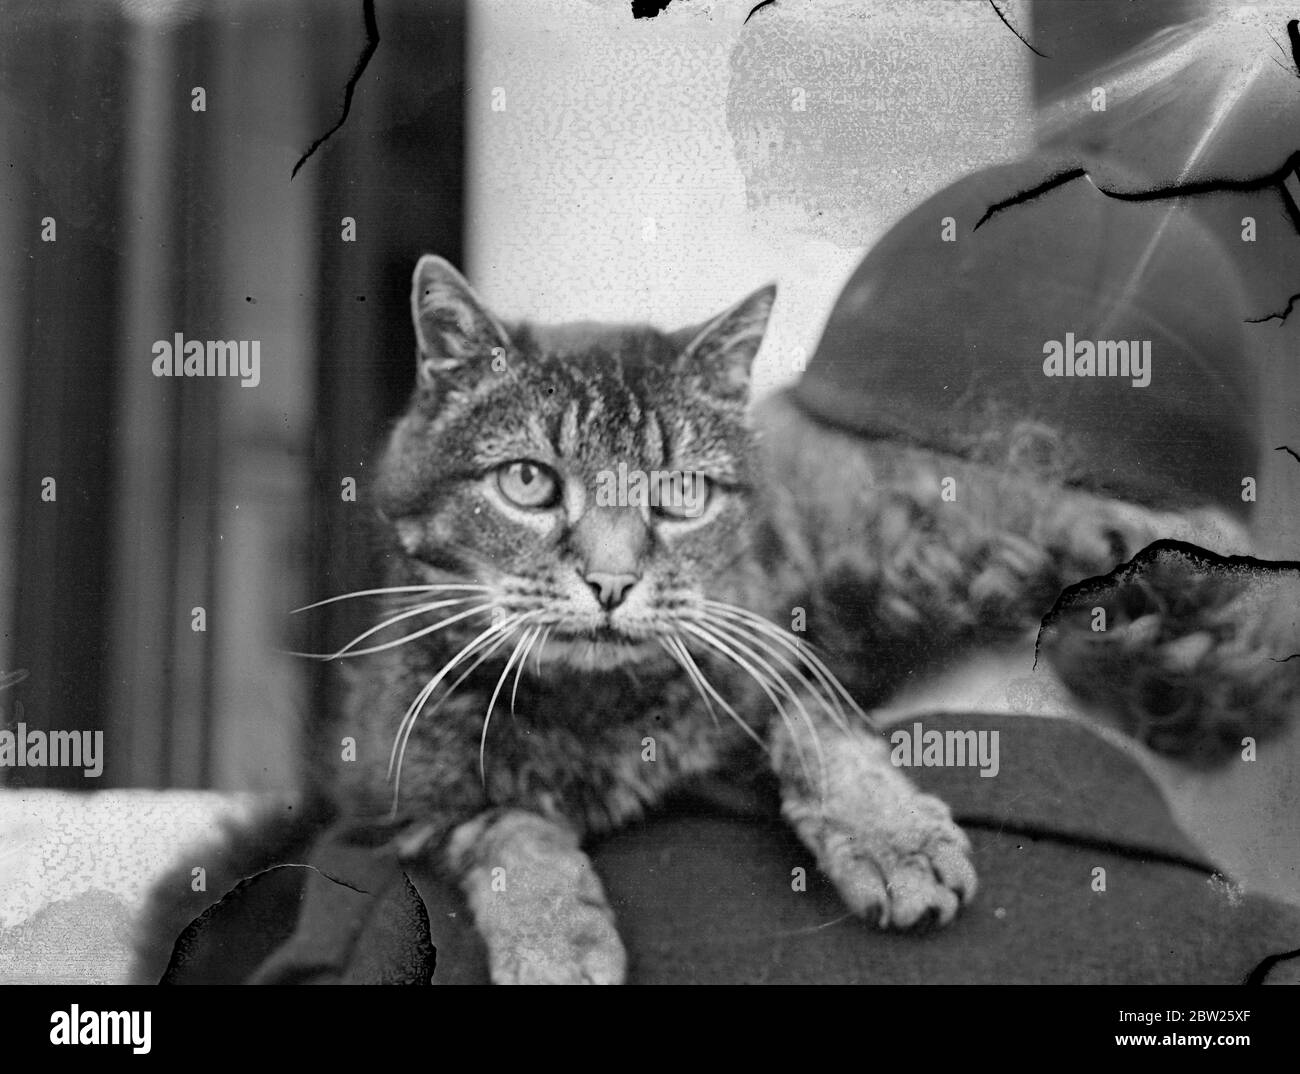 Chat Abyssinien de 23 ans en spectacle à Londres. Un chat Abyssinien de 23 ans est le vétéran du Southern Counties Cat Show, qui se déroule aux bains de Paddington, Londres. Il est extrêmement inhabituel pour un chat d'atteindre cette étape. 26 janvier 1938 Banque D'Images